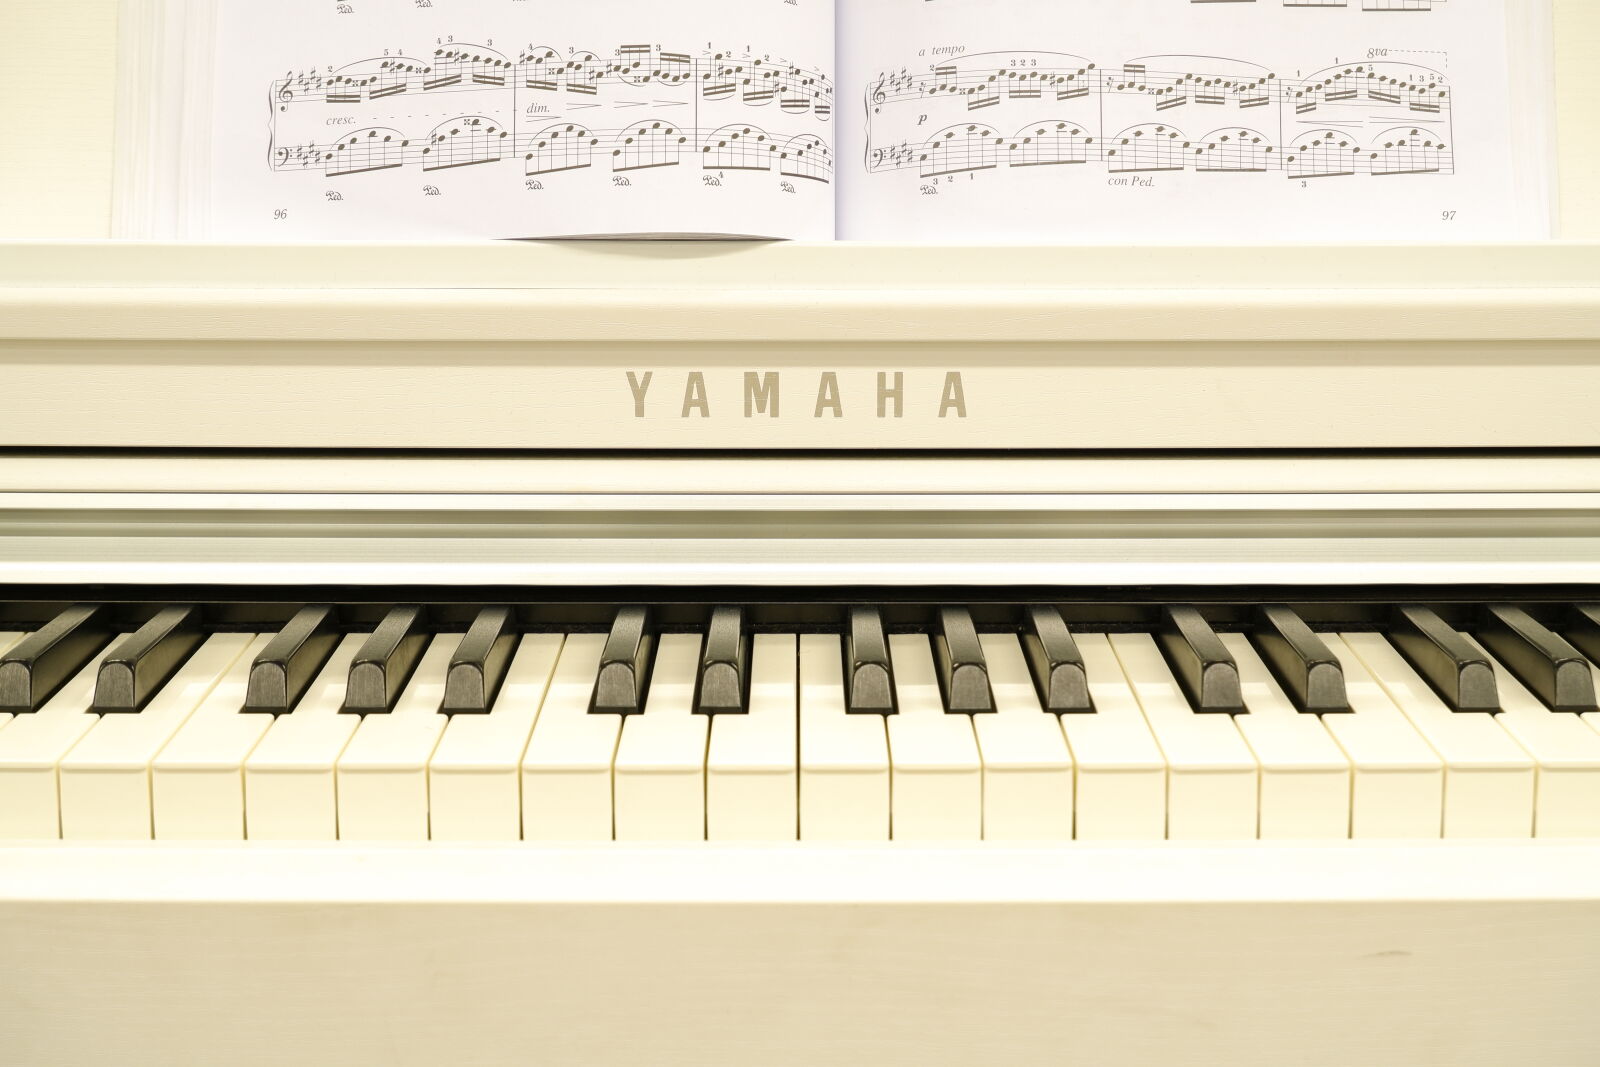 Fujifilm X-T200 sample photo. Yamaha clp-625 clavinova piano photography